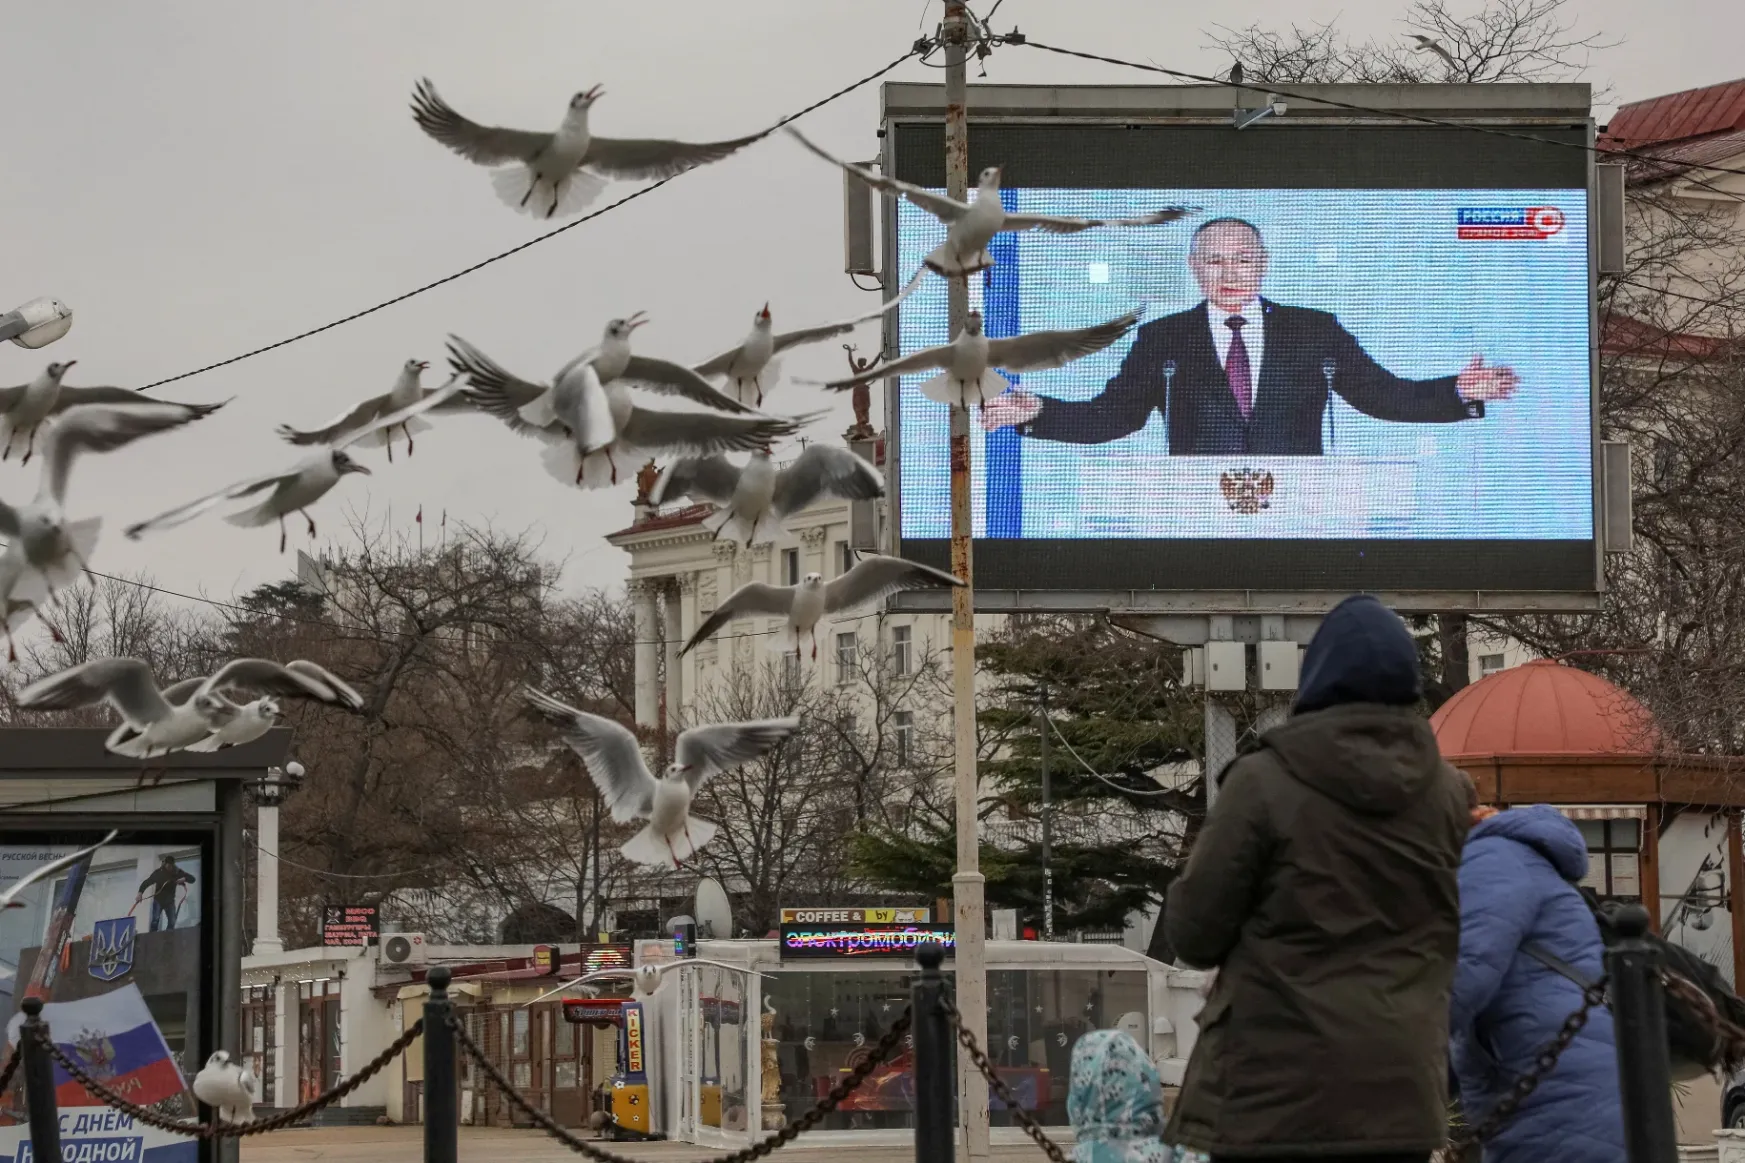 Felmérés: a magyarok Románia legoroszpártibb közössége, ami az Orbán-kormány Erdélyben is terjesztett propagandájának köszönhető